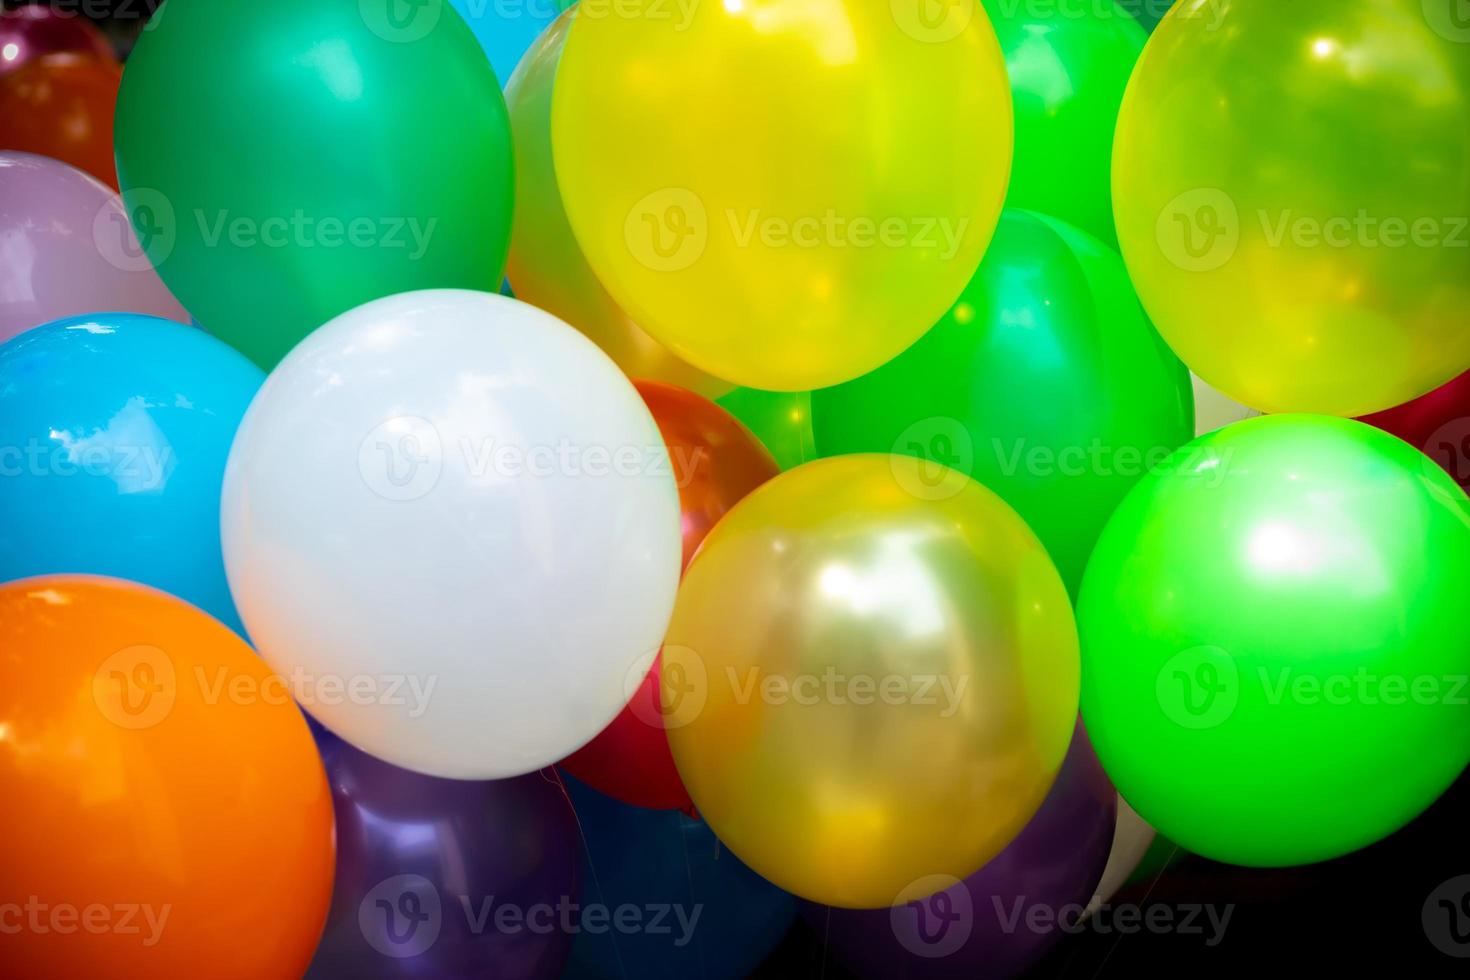 ein Menge von bunt Luftballons Nahansicht Ansichten. Luftballons von viele Farben. bunt Luftballons Hintergrund. foto